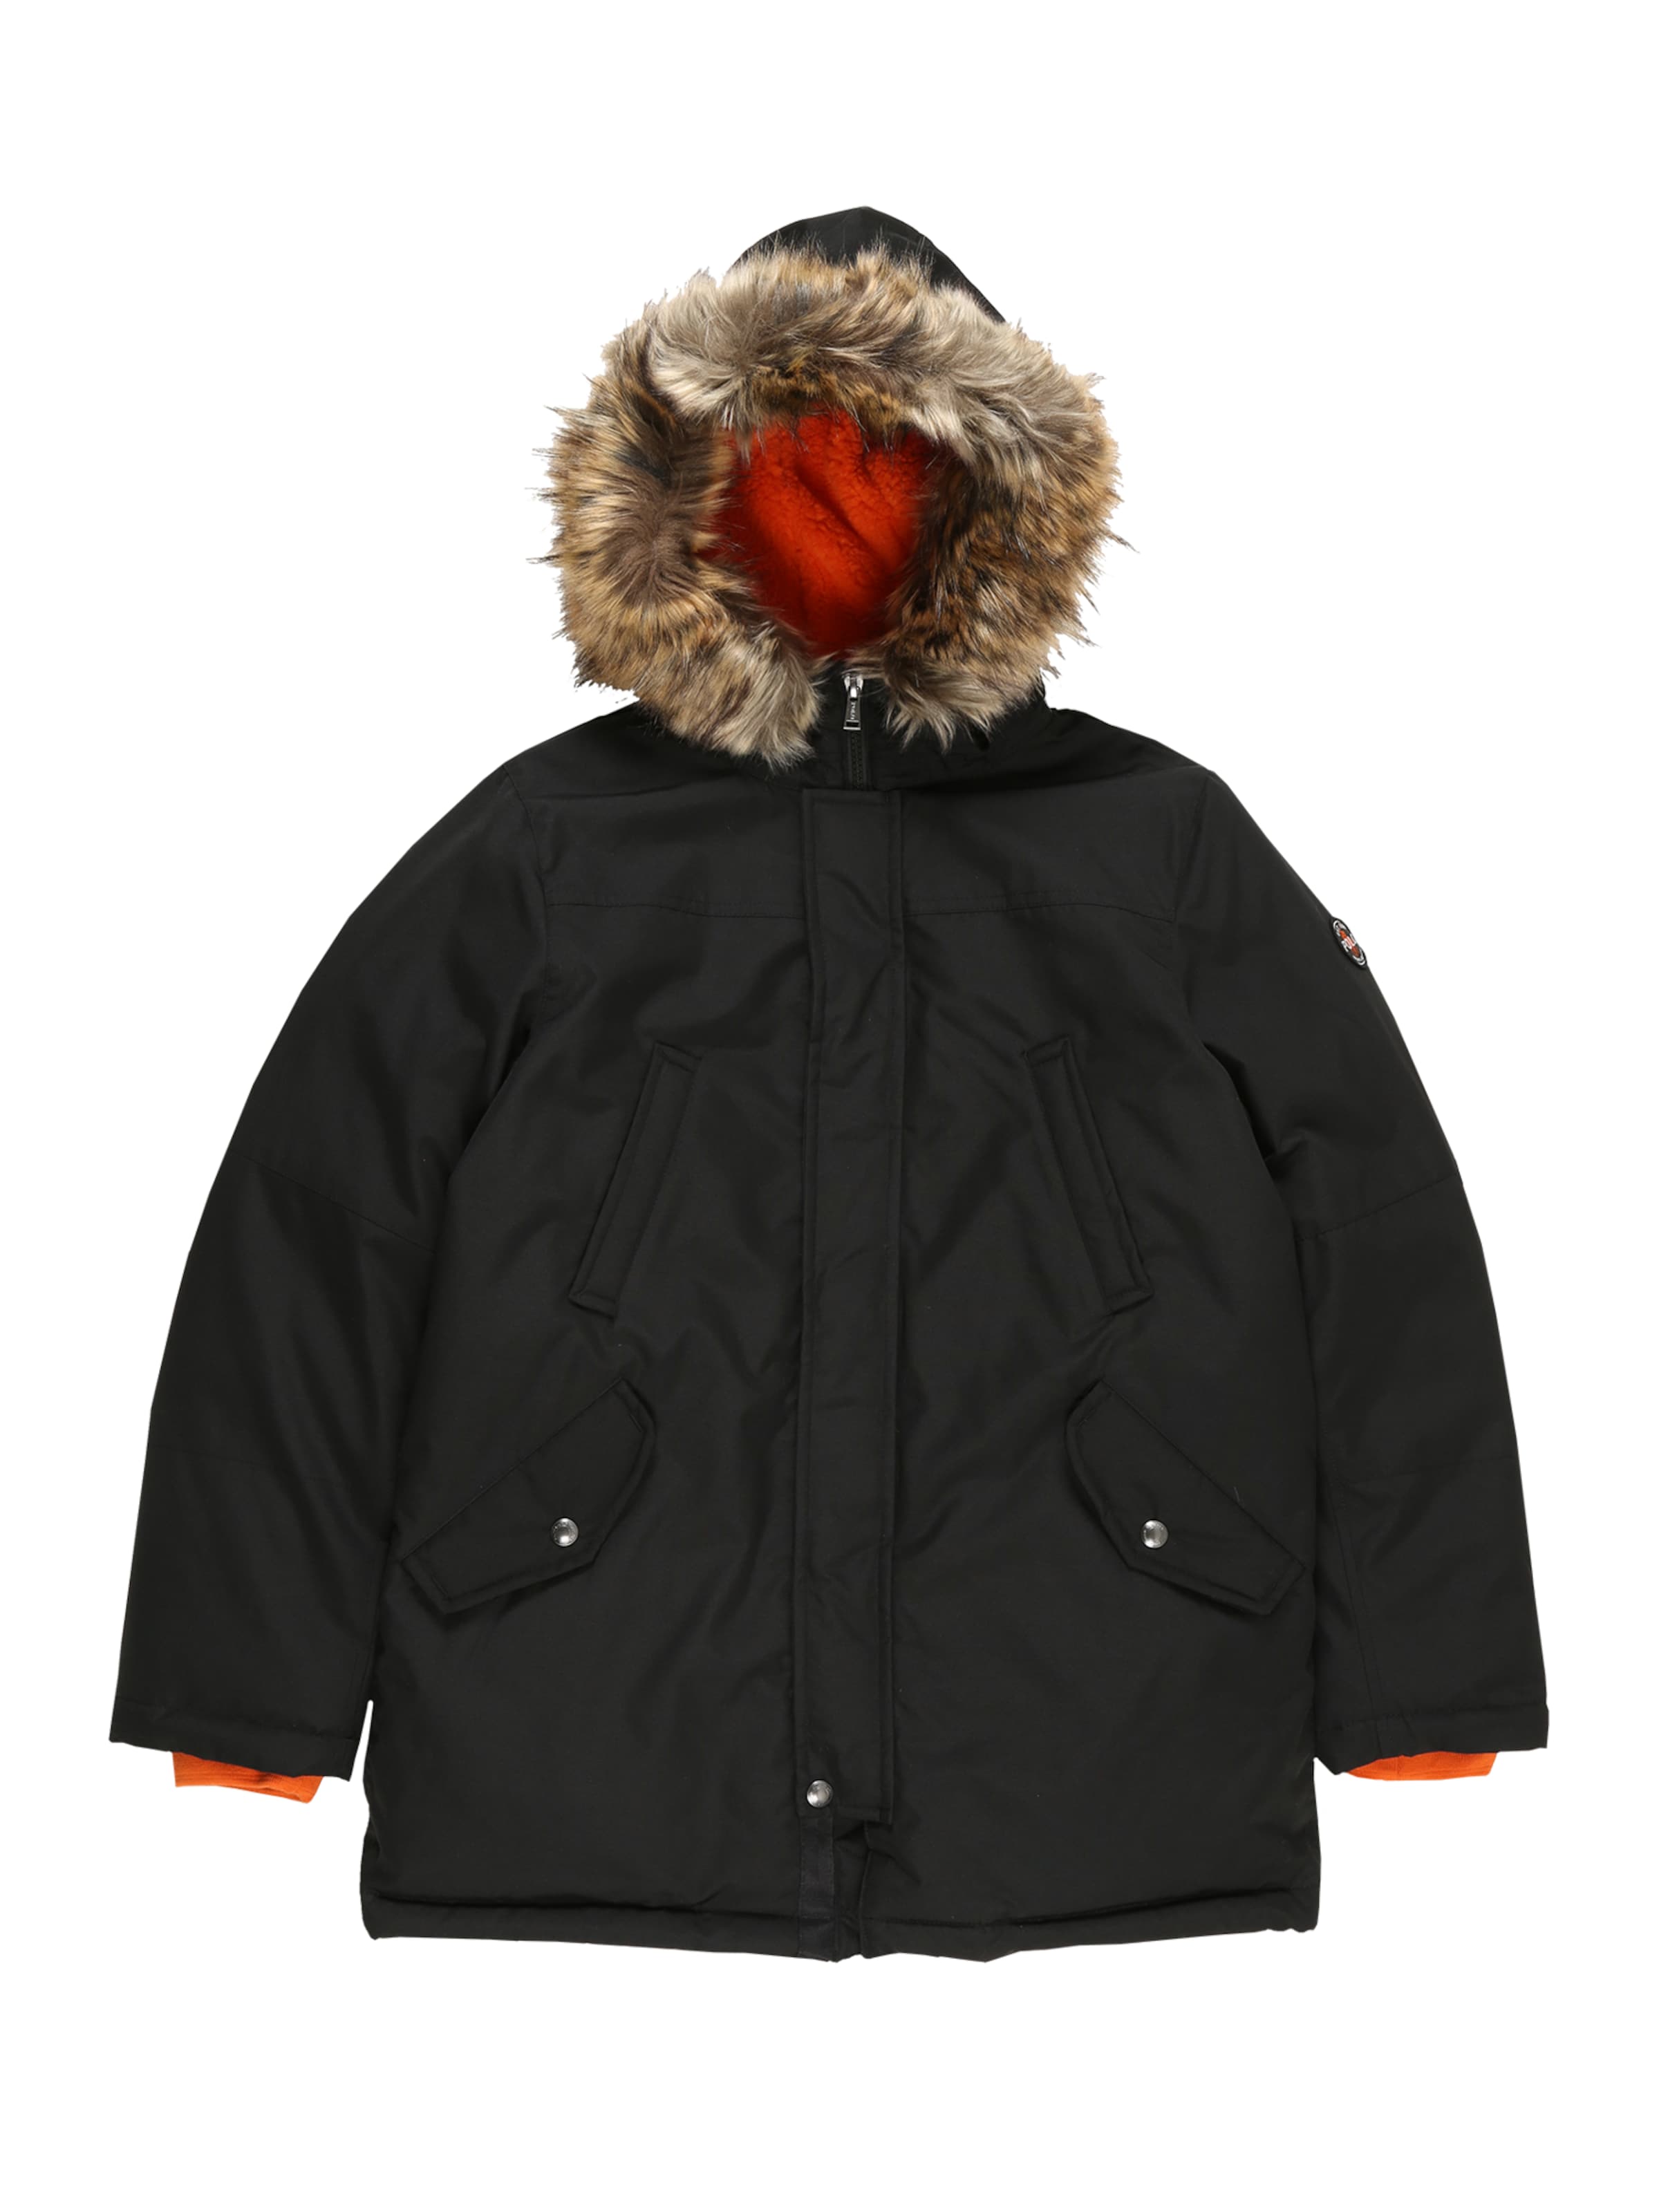 polo ralph lauren winter jacket